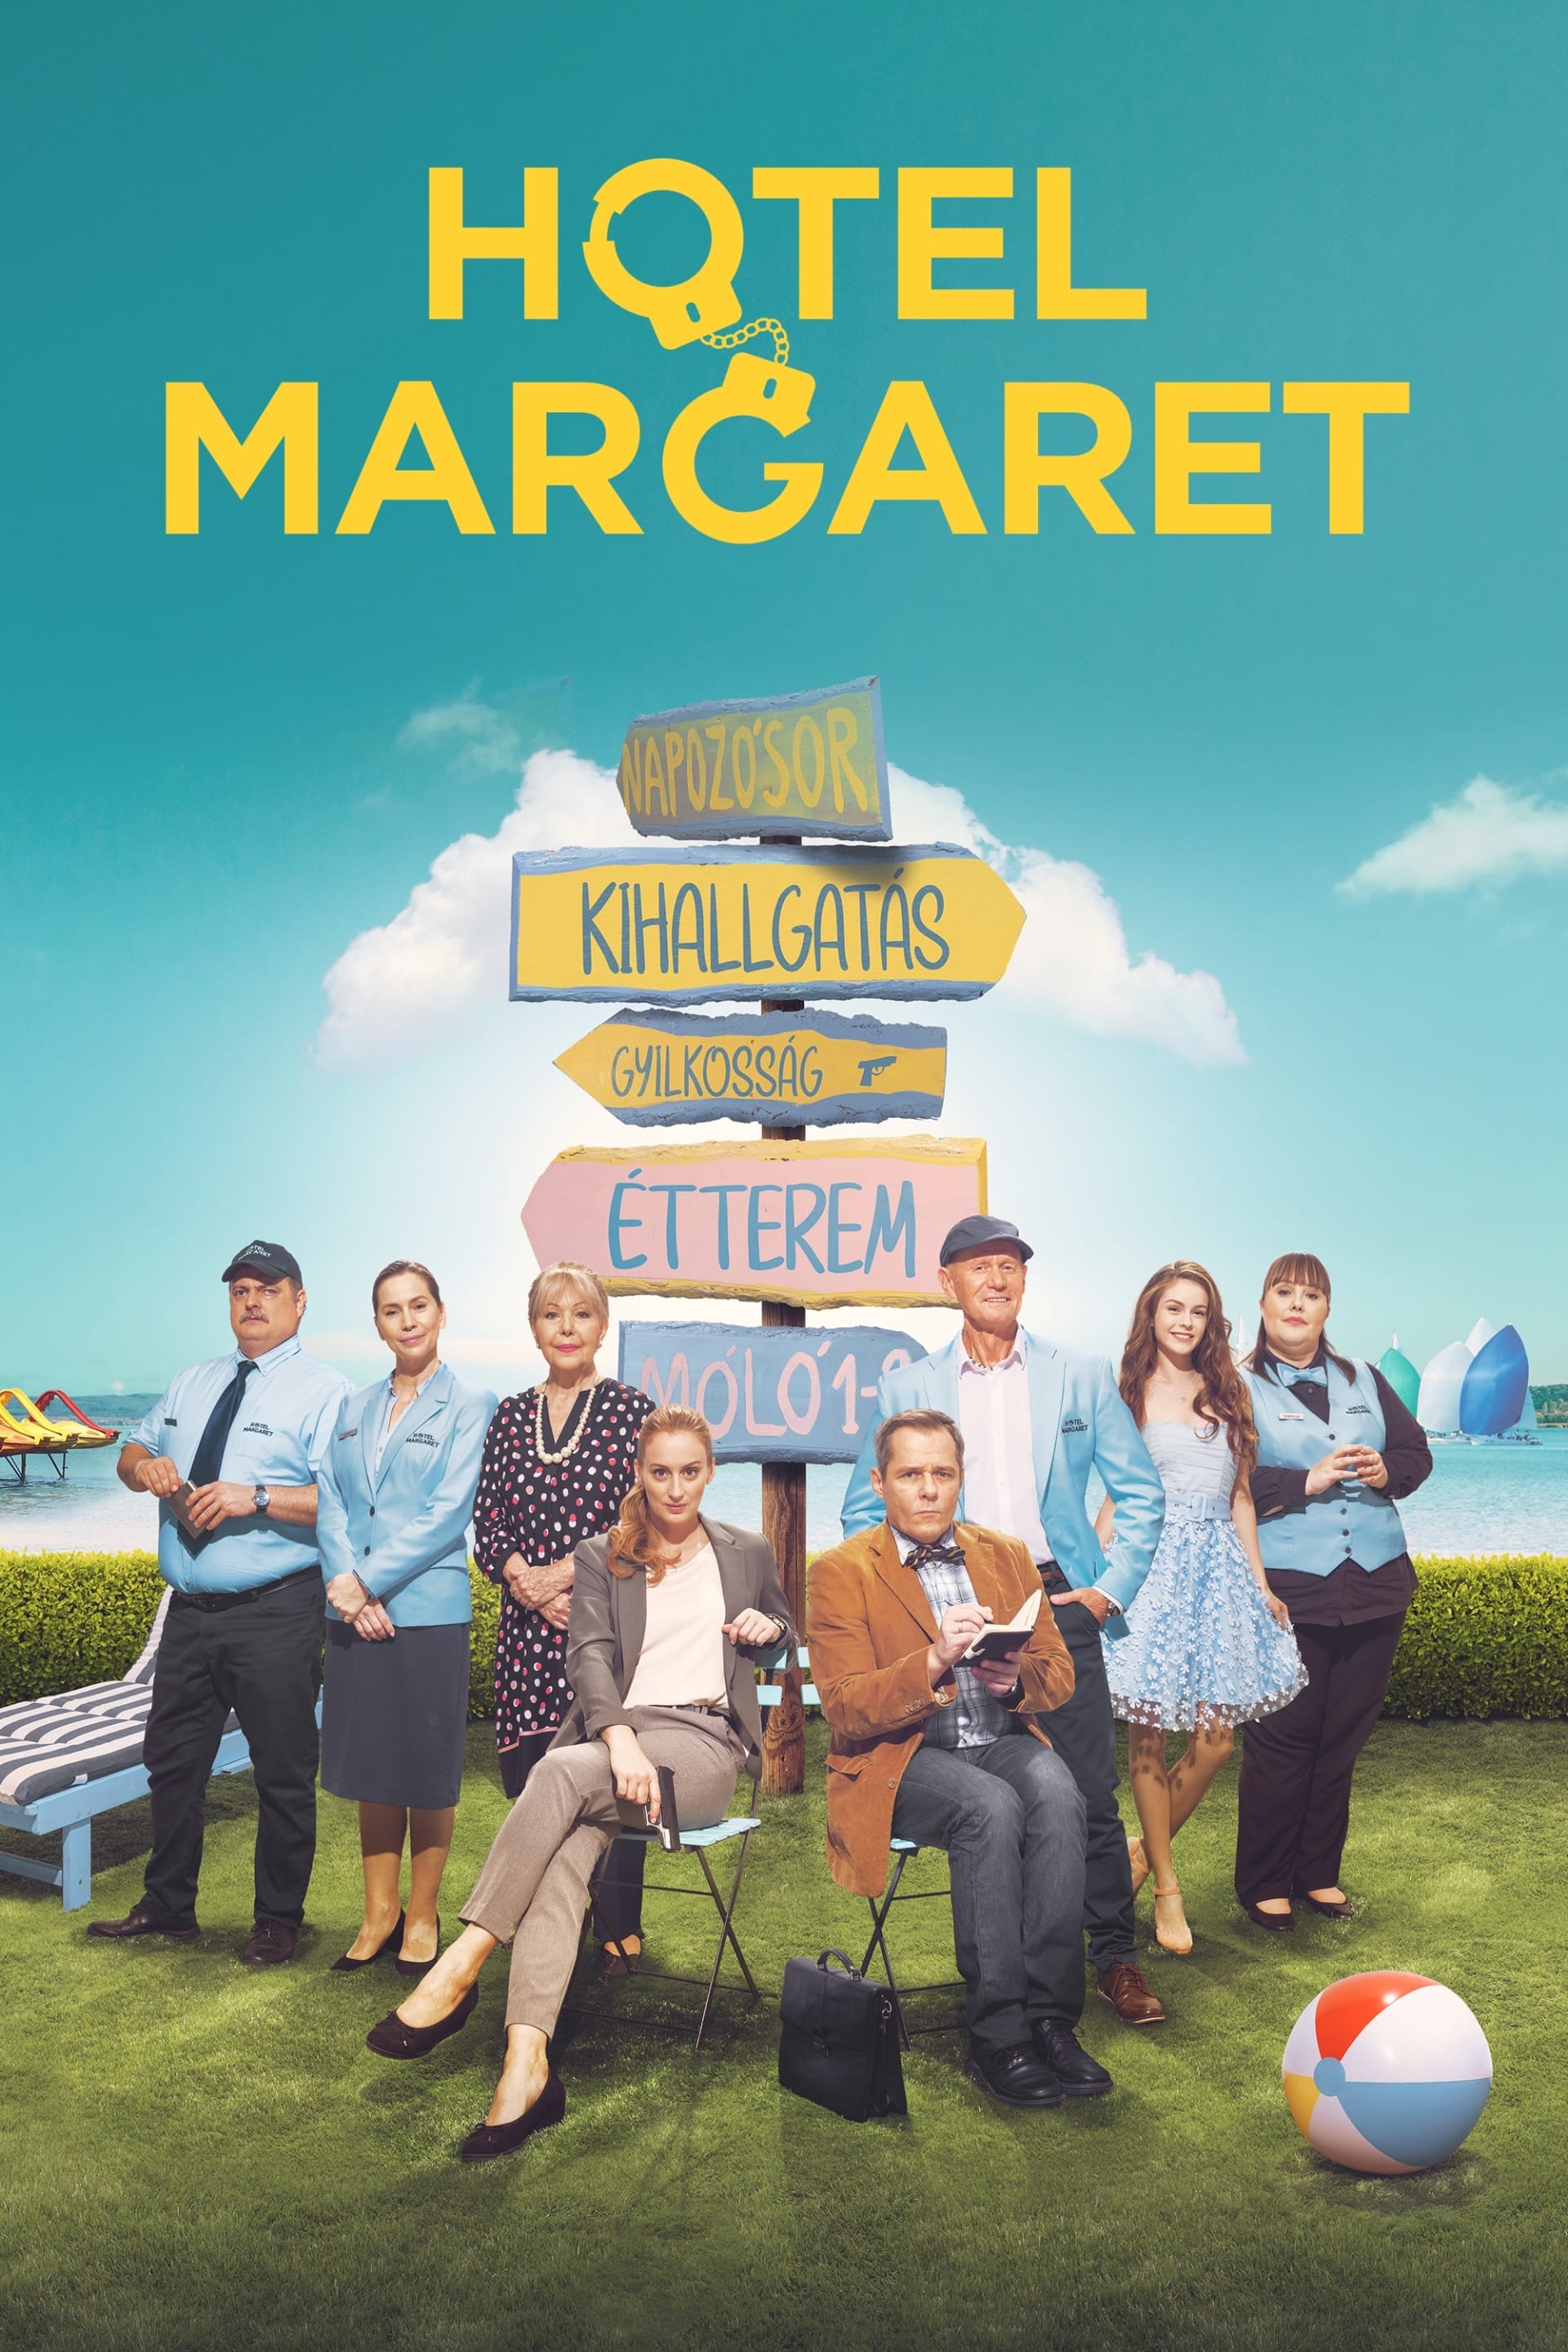 Hotel Margaret TV Shows About Criminal